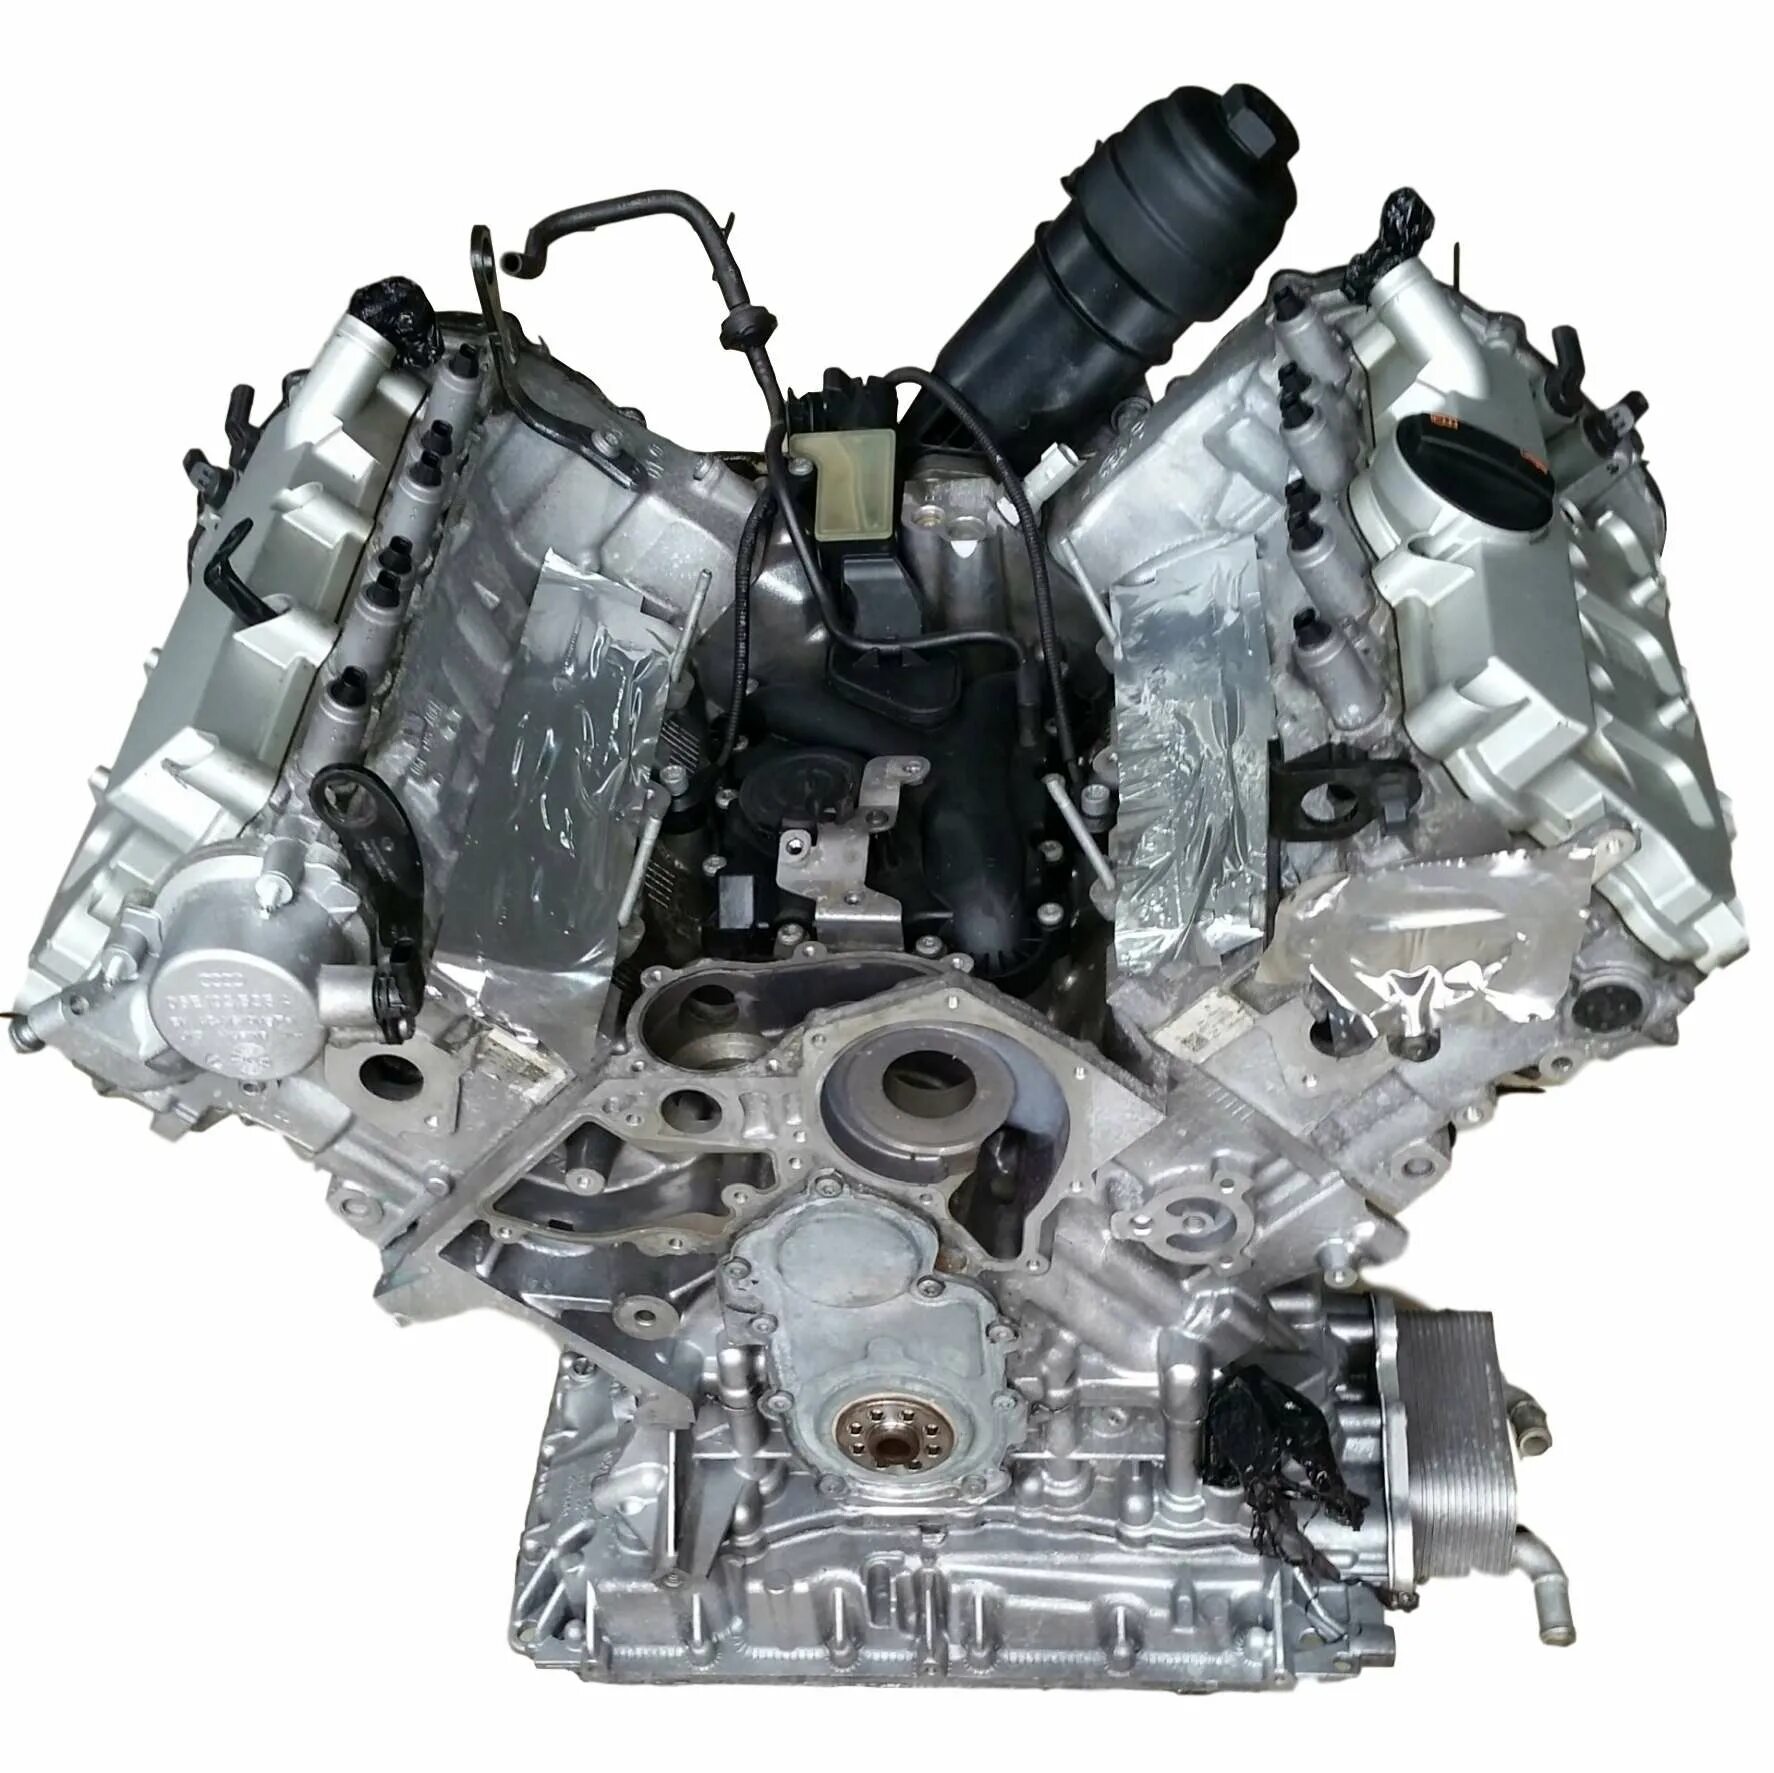 Двигатель CHV 2.8 FSI Audi a6. CHV двигатель Ауди. CHVA 2.8 FSI. 2.3 BDW двигатель. Купить моторы в кредит